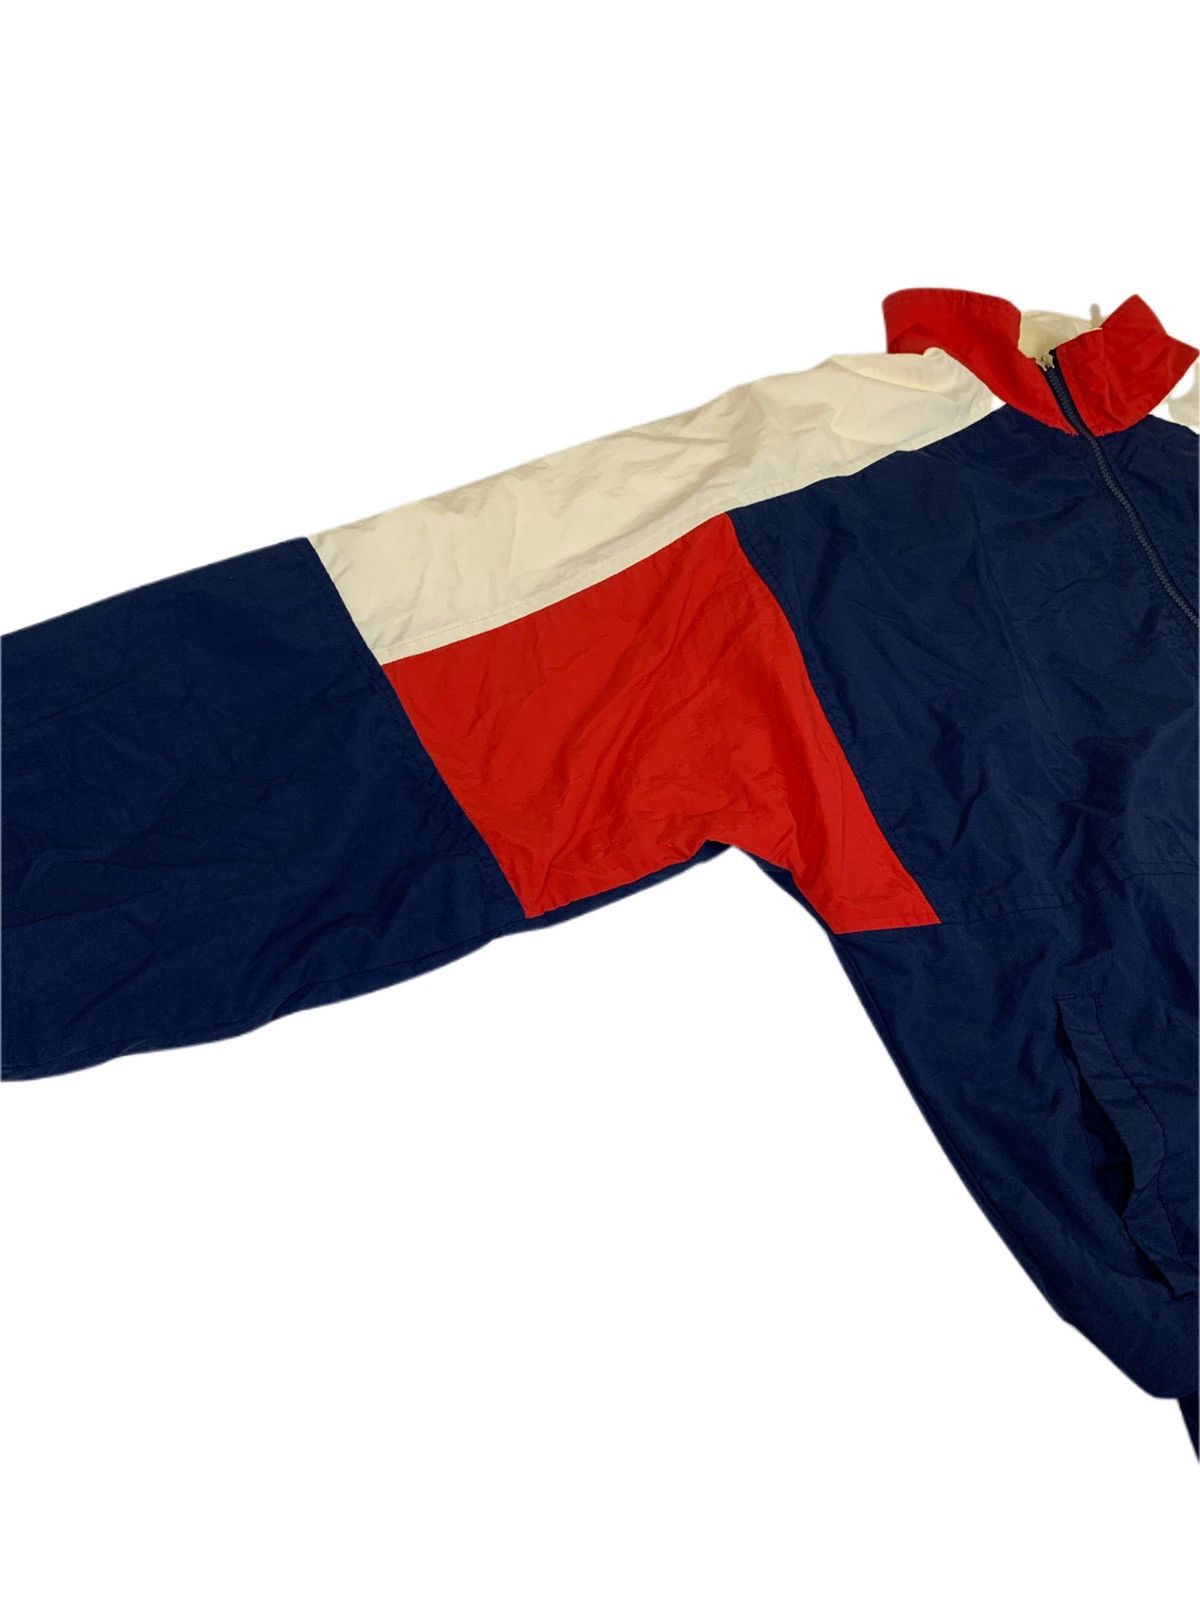 Vintage Vintage Montreal Expos Starter Windbreaker Jacket Size US XL / EU 56 / 4 - 3 Thumbnail